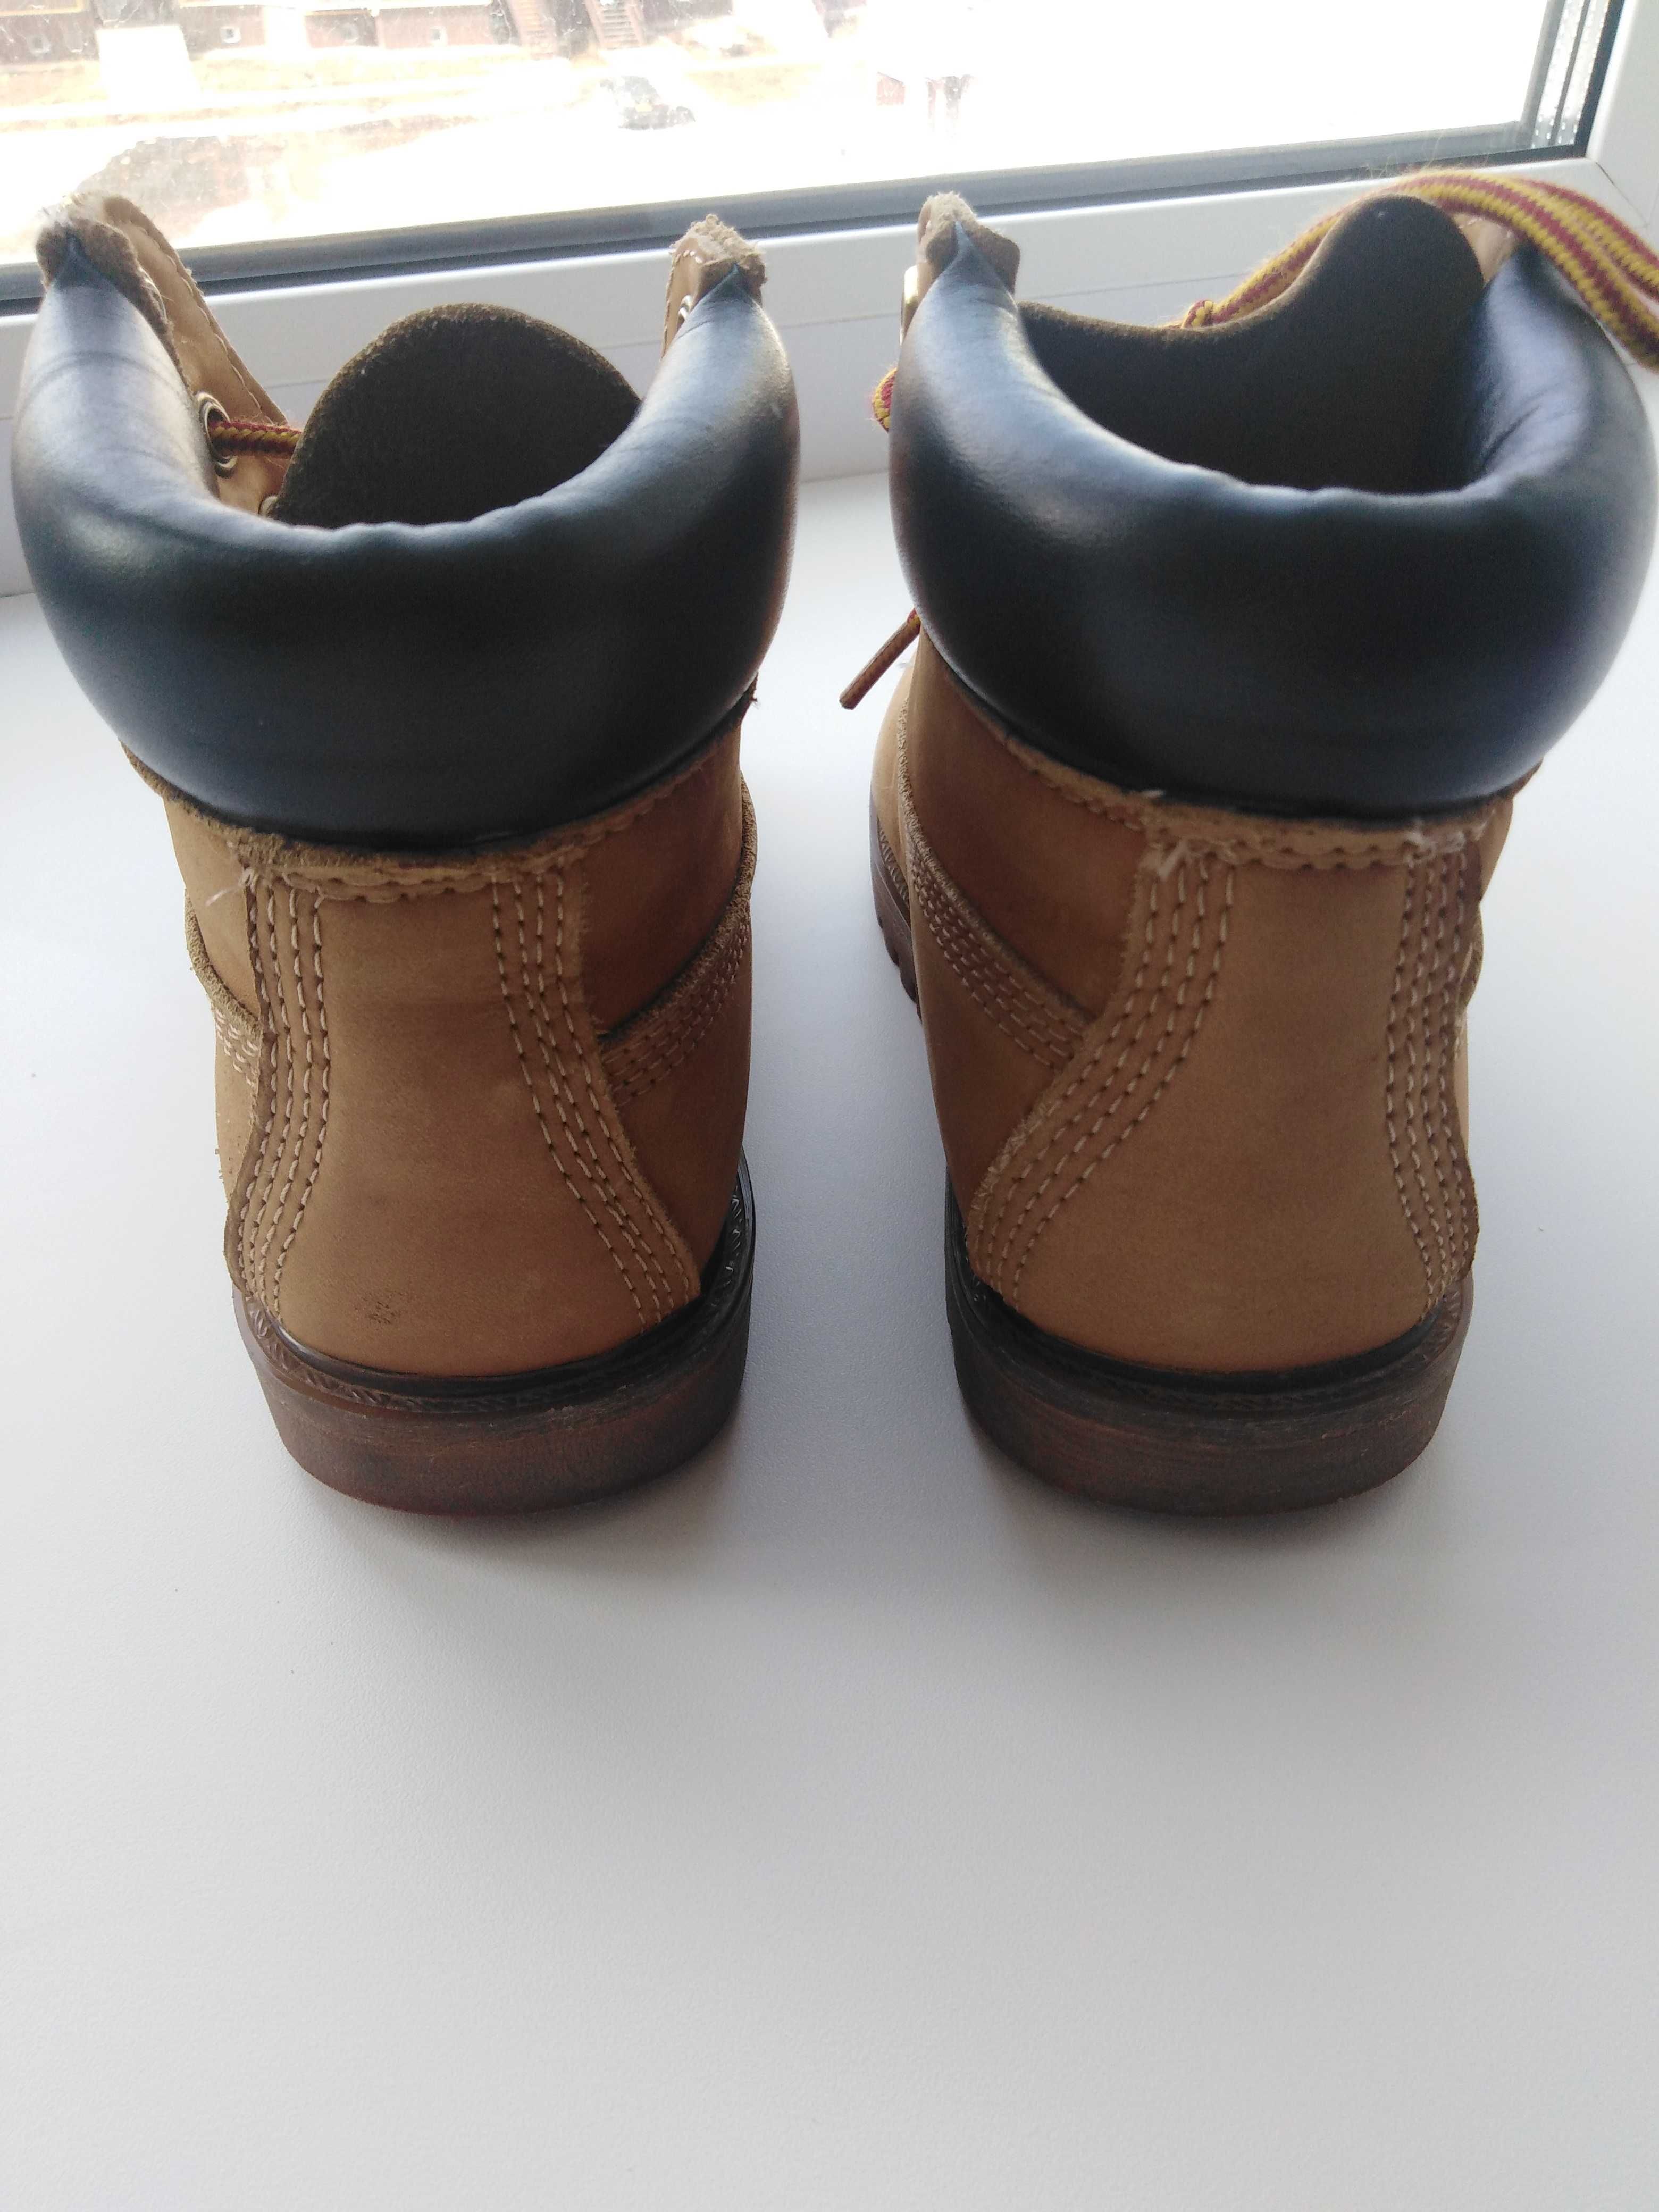 Детские ботинки Timberland